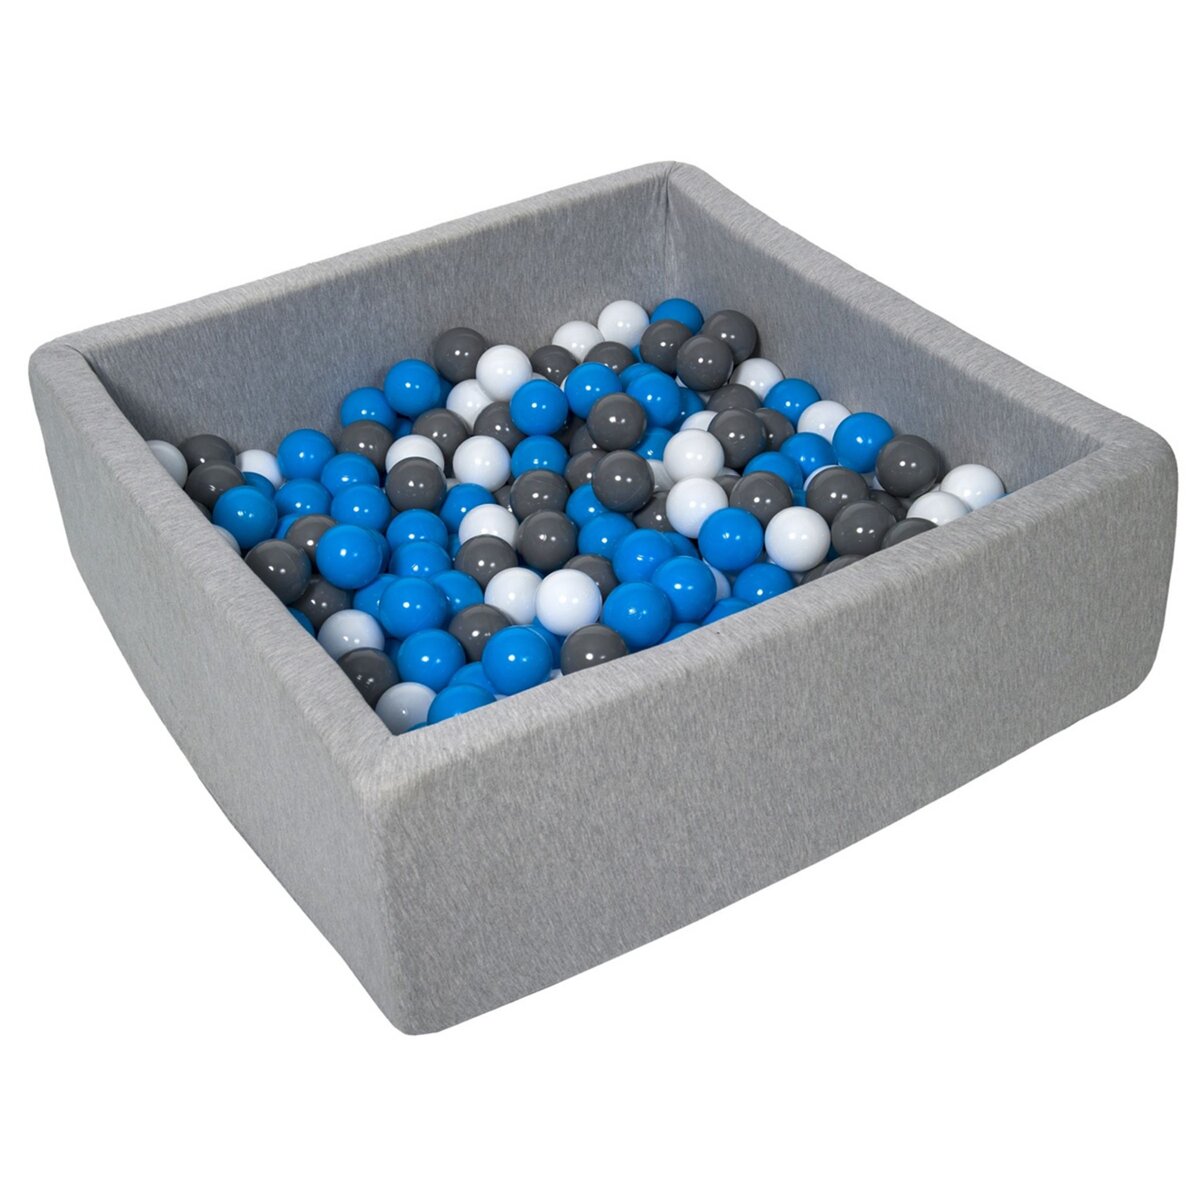  Piscine à balles pour enfant, 90x90 cm, Aire de jeu + 200 balles blanc,bleu,gris